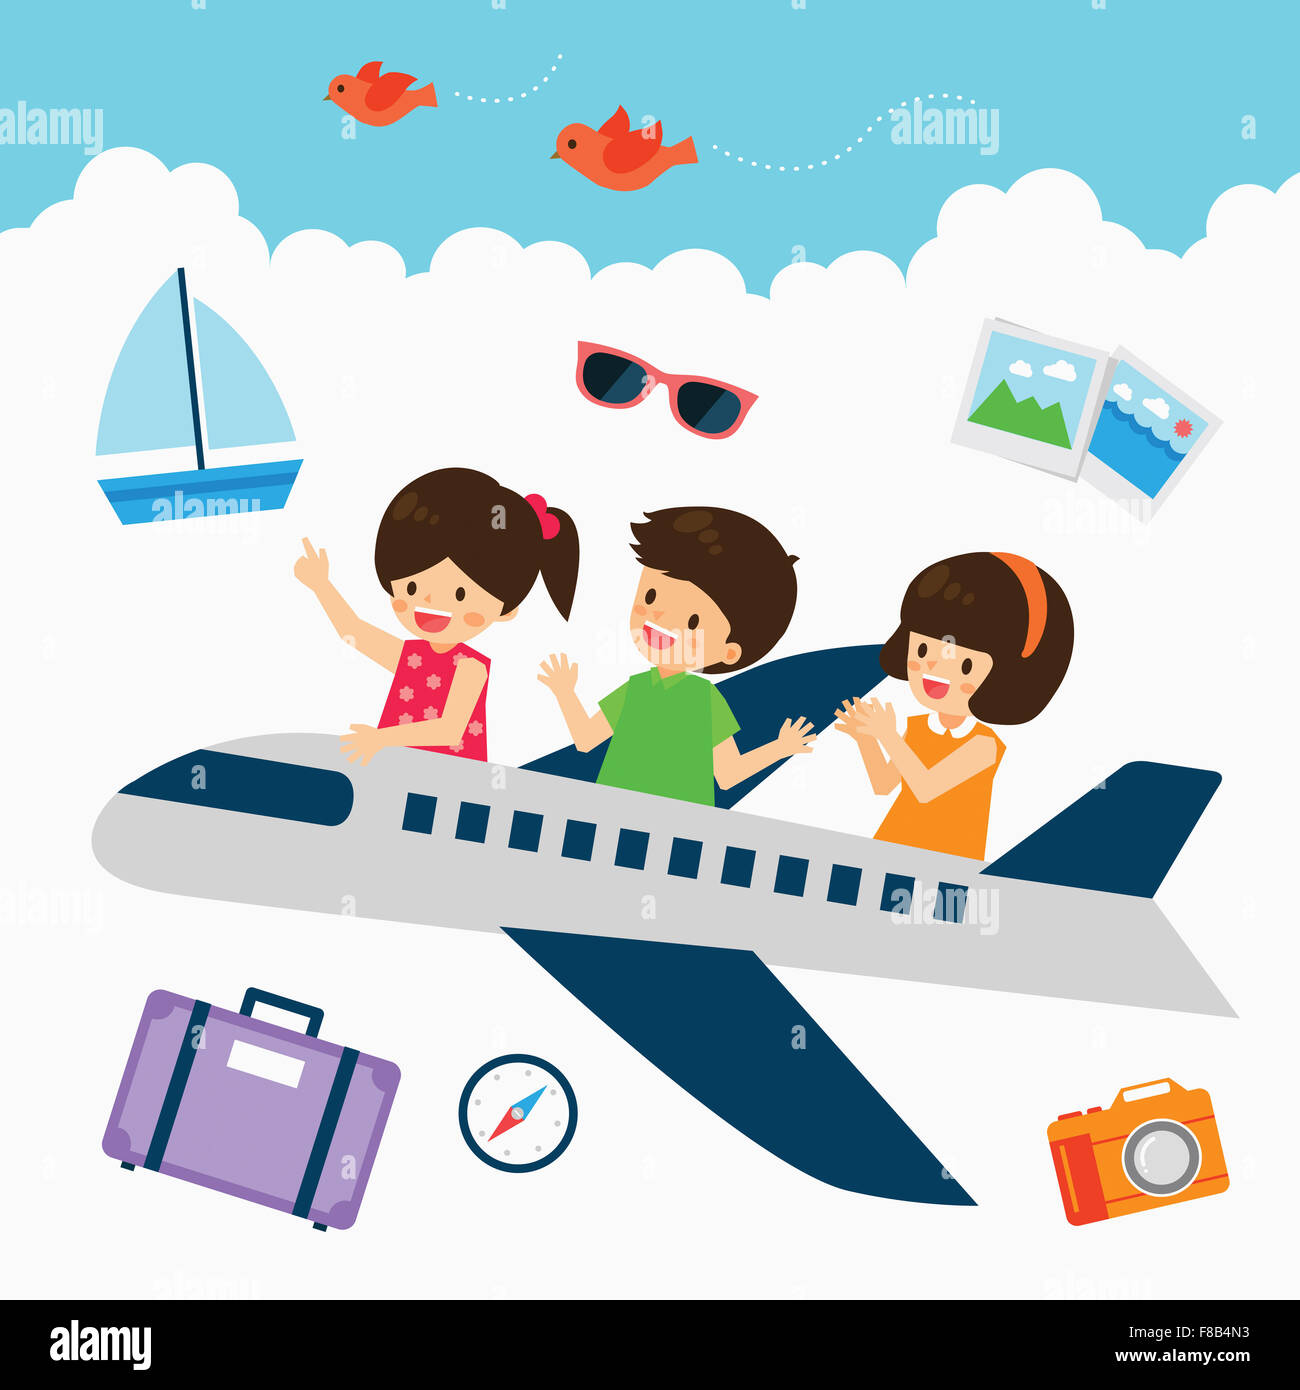 Drei Kinder fliegen im Flugzeug mit Yacht, Sonnenbrille, Fotos, Koffer,  Kompass, Kamera und fliegende Vögel auf Wolke Stockfotografie - Alamy